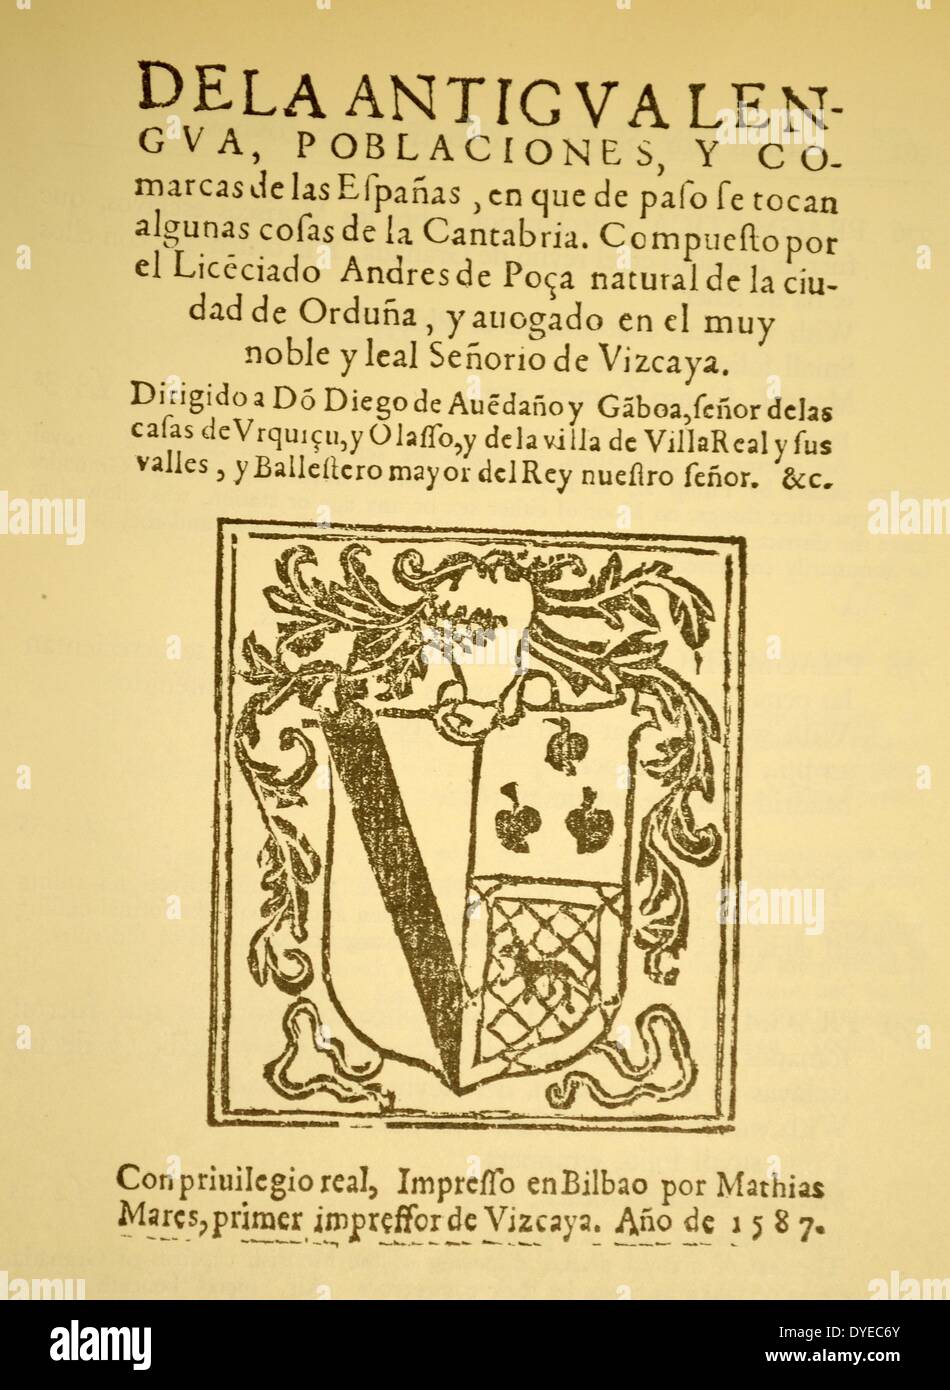 Title Page from Andres de Poza, de la Antigua Lengua Poblaciones y Comarcas de las Espanas. Bilbao, Mathias Mares. Dated 1587 Stock Photo